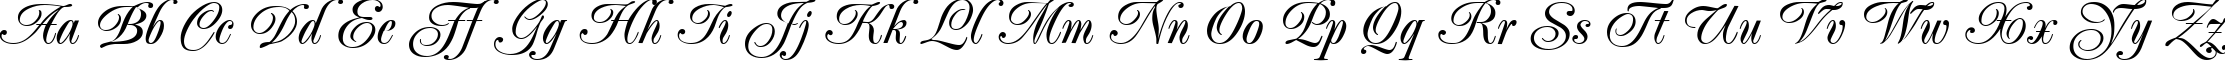 Пример написания английского алфавита шрифтом PopularScript